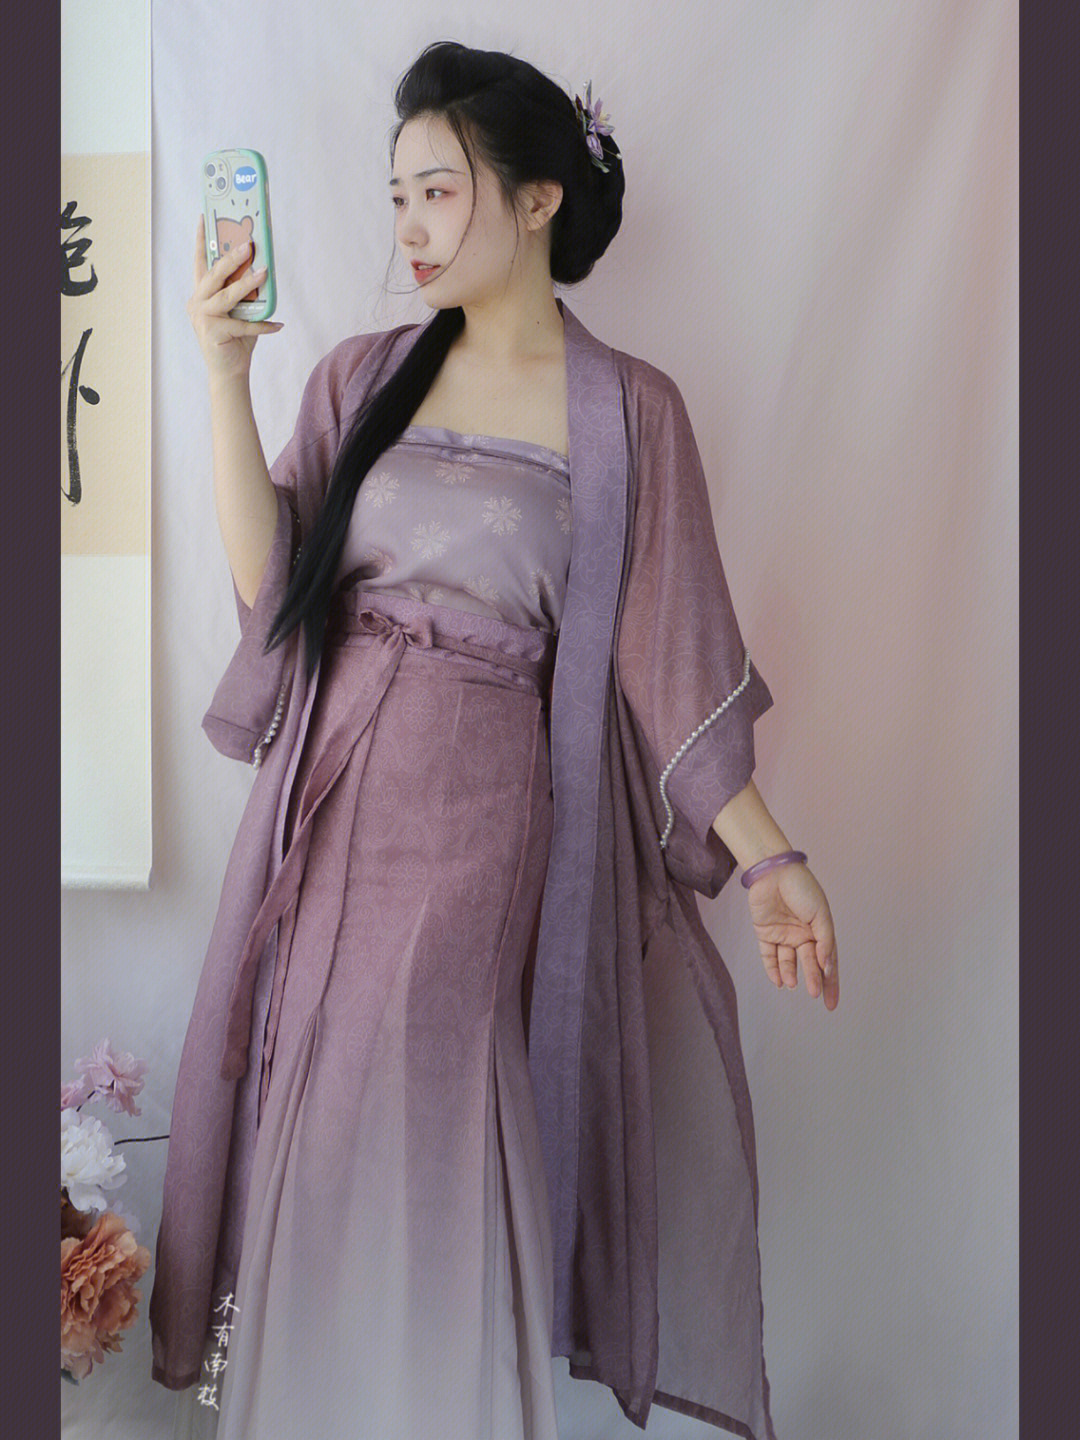 又是长干寺加三裥裙的搭配,我觉得像我这样有点肉不太高的,如果穿三裥